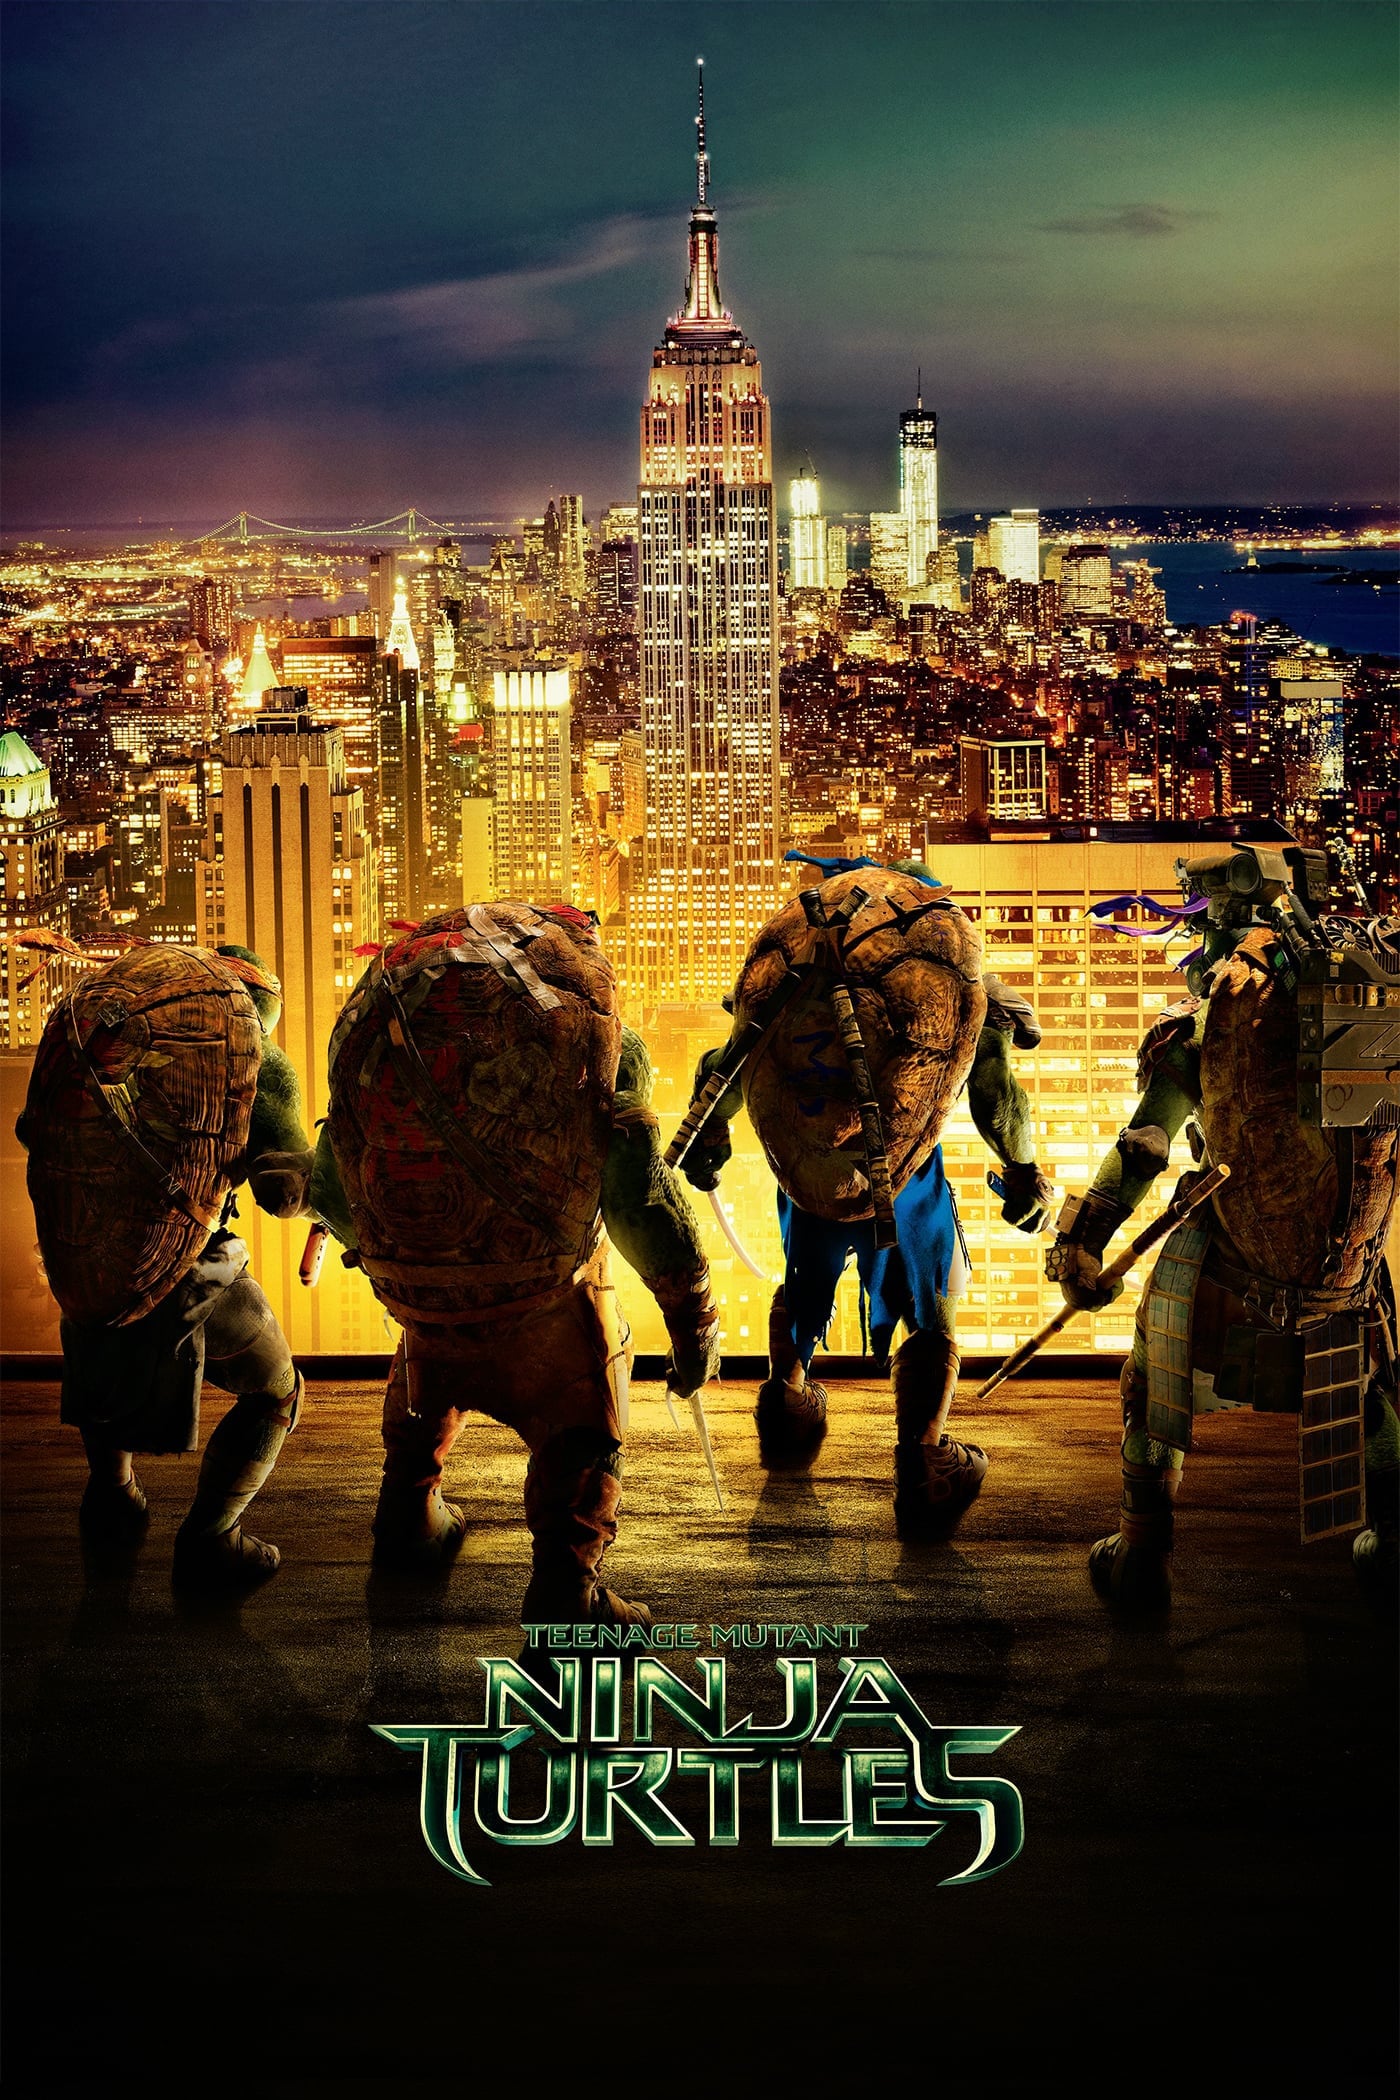 Teenage Mutant Ninja Turtles (2014) Download